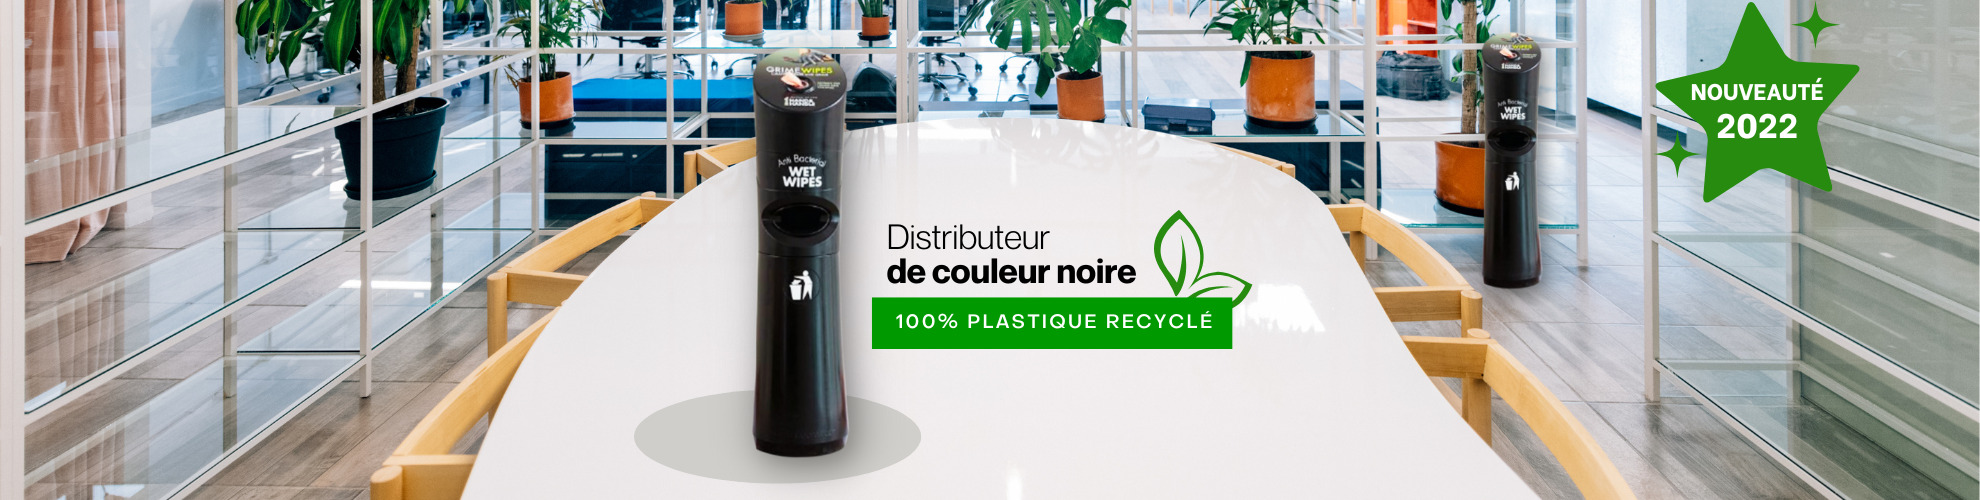 Nouveauté distributeur plastique recyclé